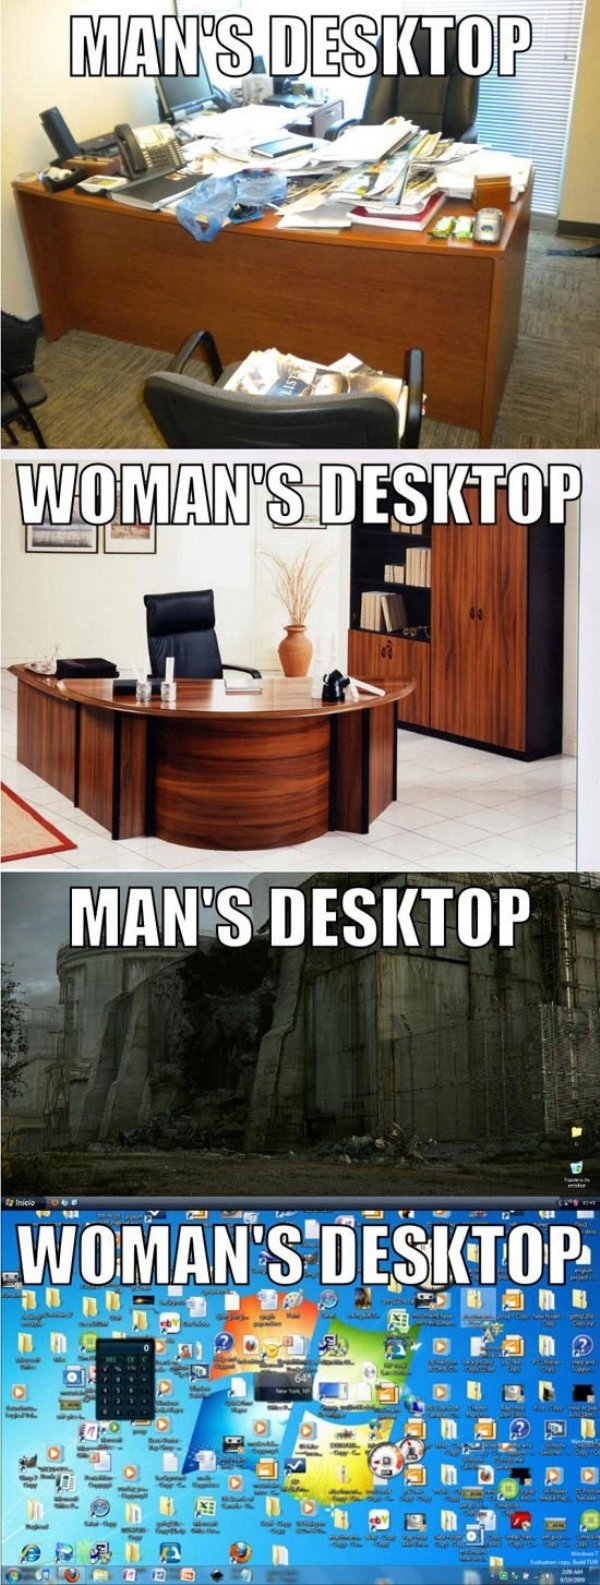 men vs women desktop - Man'S.Desktop Woman'S Desktop Man'S Desktop Woman'S Desktop ou encore Ltd de Il